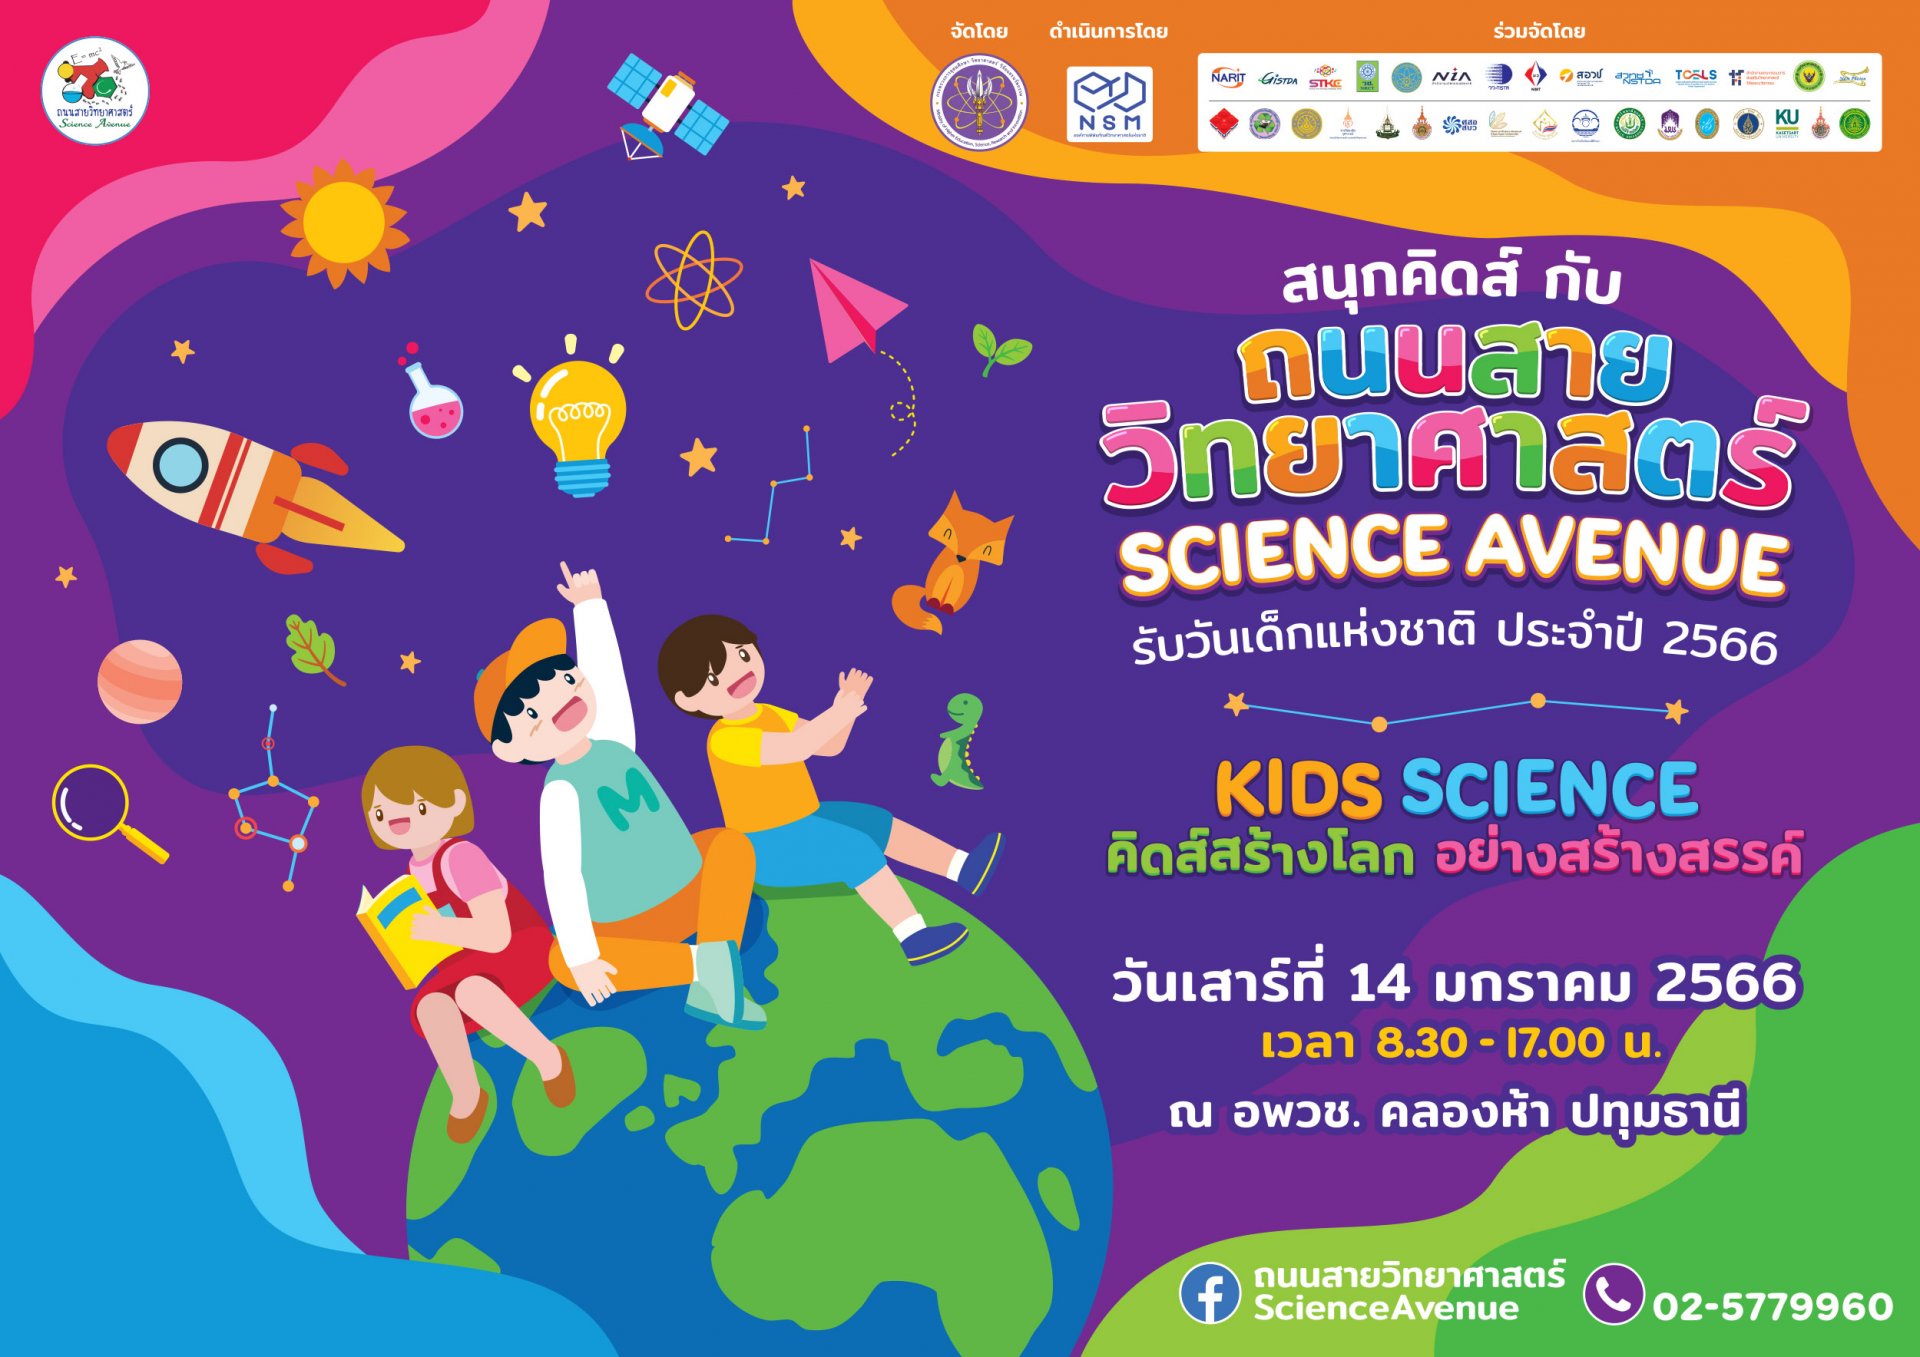 ชวนเที่ยวงาน “ถนนสายวิทยาศาสตร์ รับวันเด็กแห่งชาติ ประจำปี 2566”  สนุกกับการค้นพบความมหัศจรรย์ของวิทยาศาสตร์  ลุ้นรับของรางวัลมากมาย